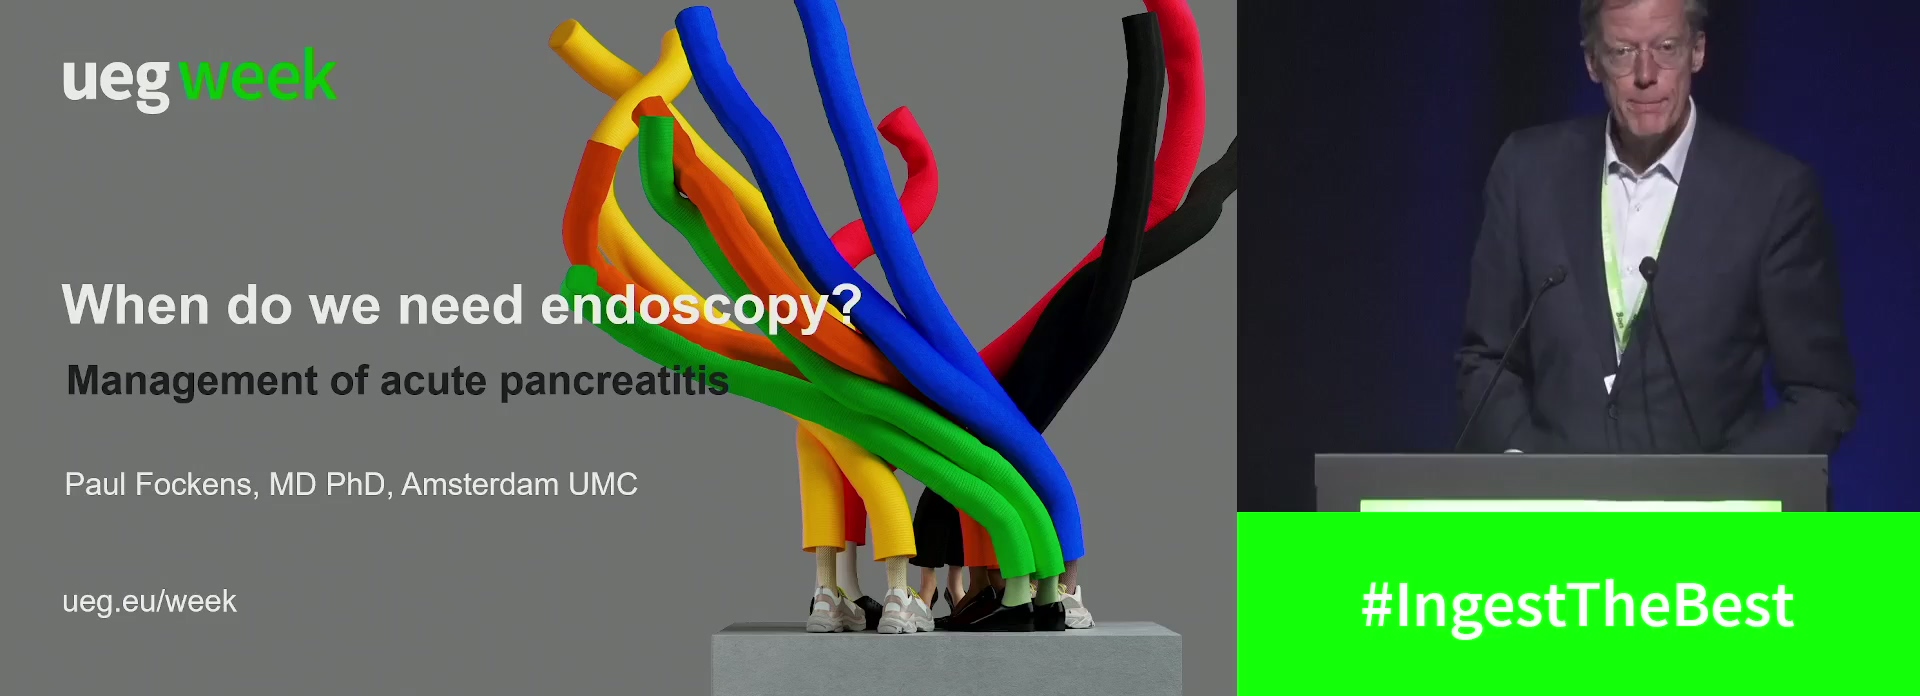 When do we need endoscopy?